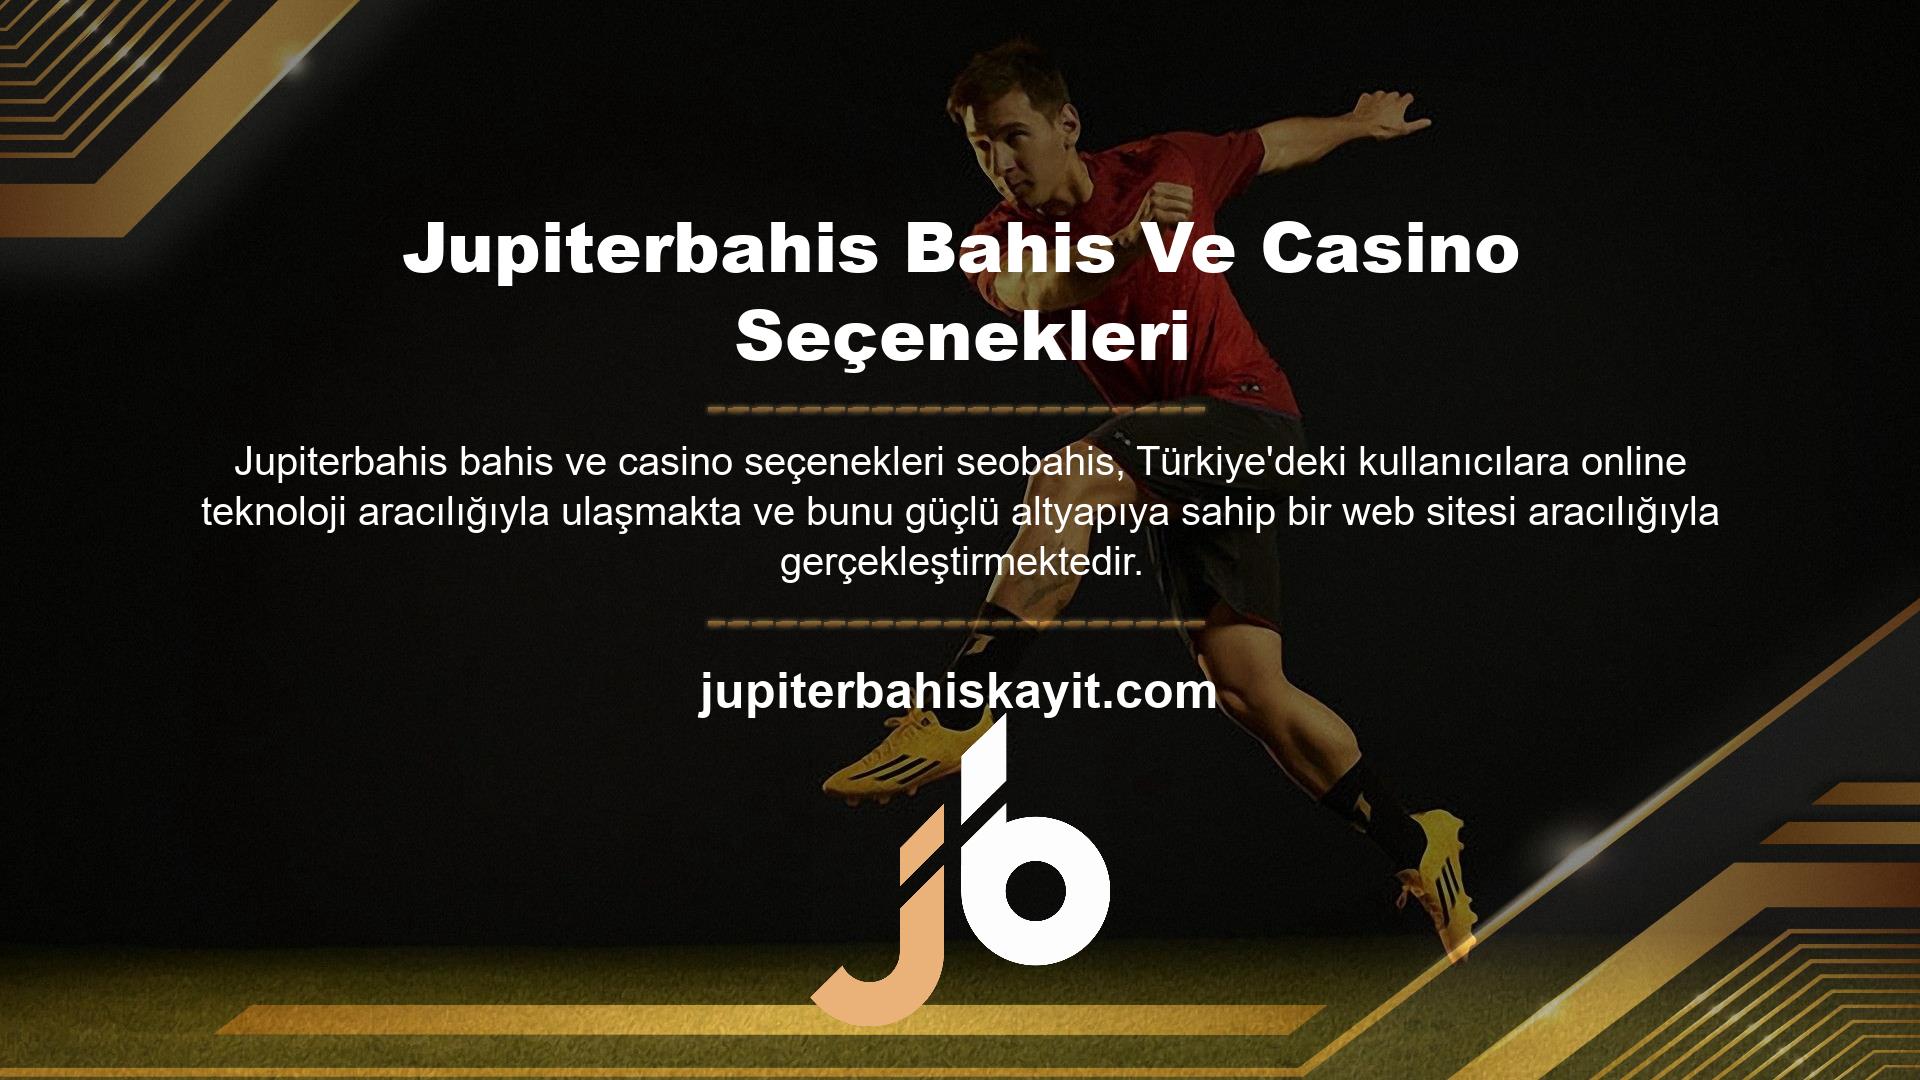 Jupiterbahis giriş adresine tıklayan tüm kullanıcılar Jupiterbahis bahis sitesinde sunulan bahislerden ve casino oyunlarından yararlanma imkanına sahiptir